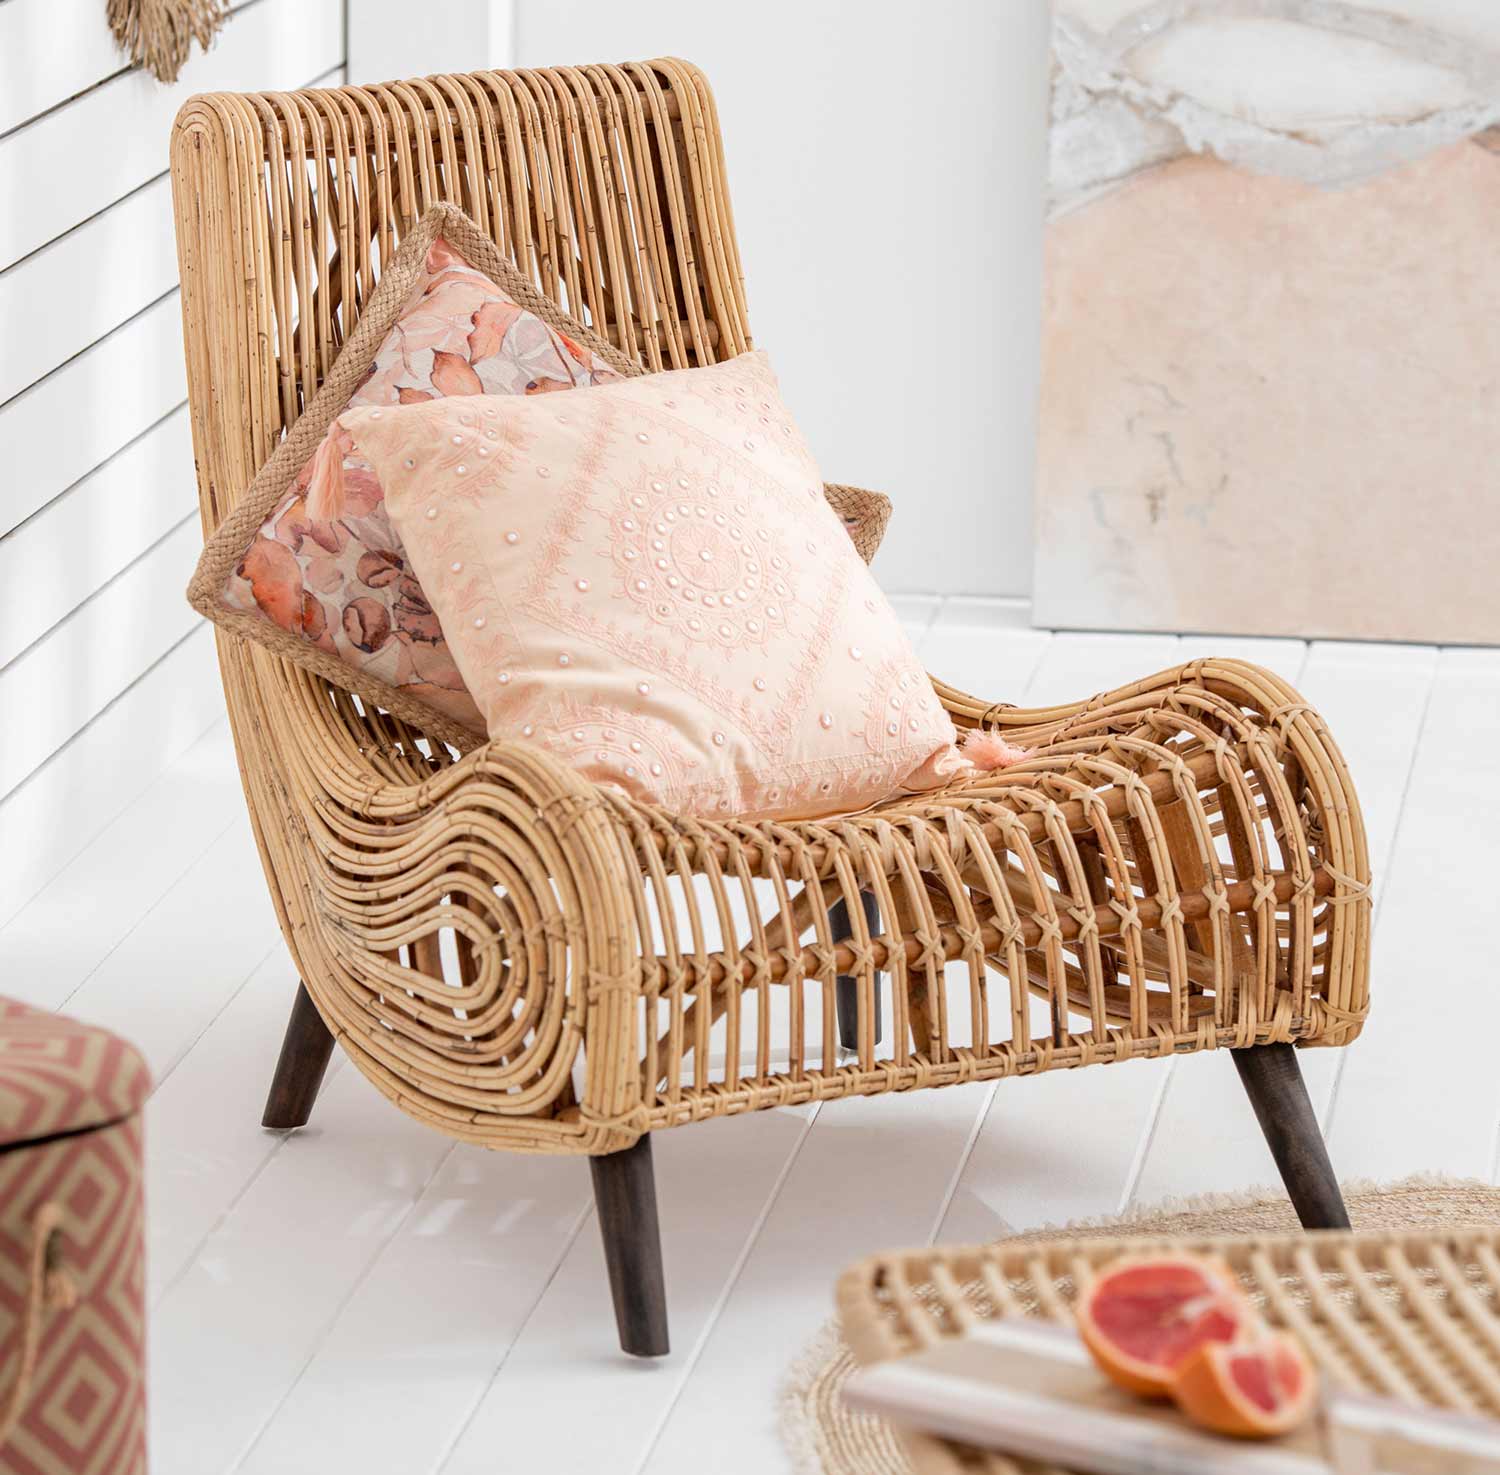 Natúr színű rattan pihenő fotel bézs párnákkal, világos nappaliban.